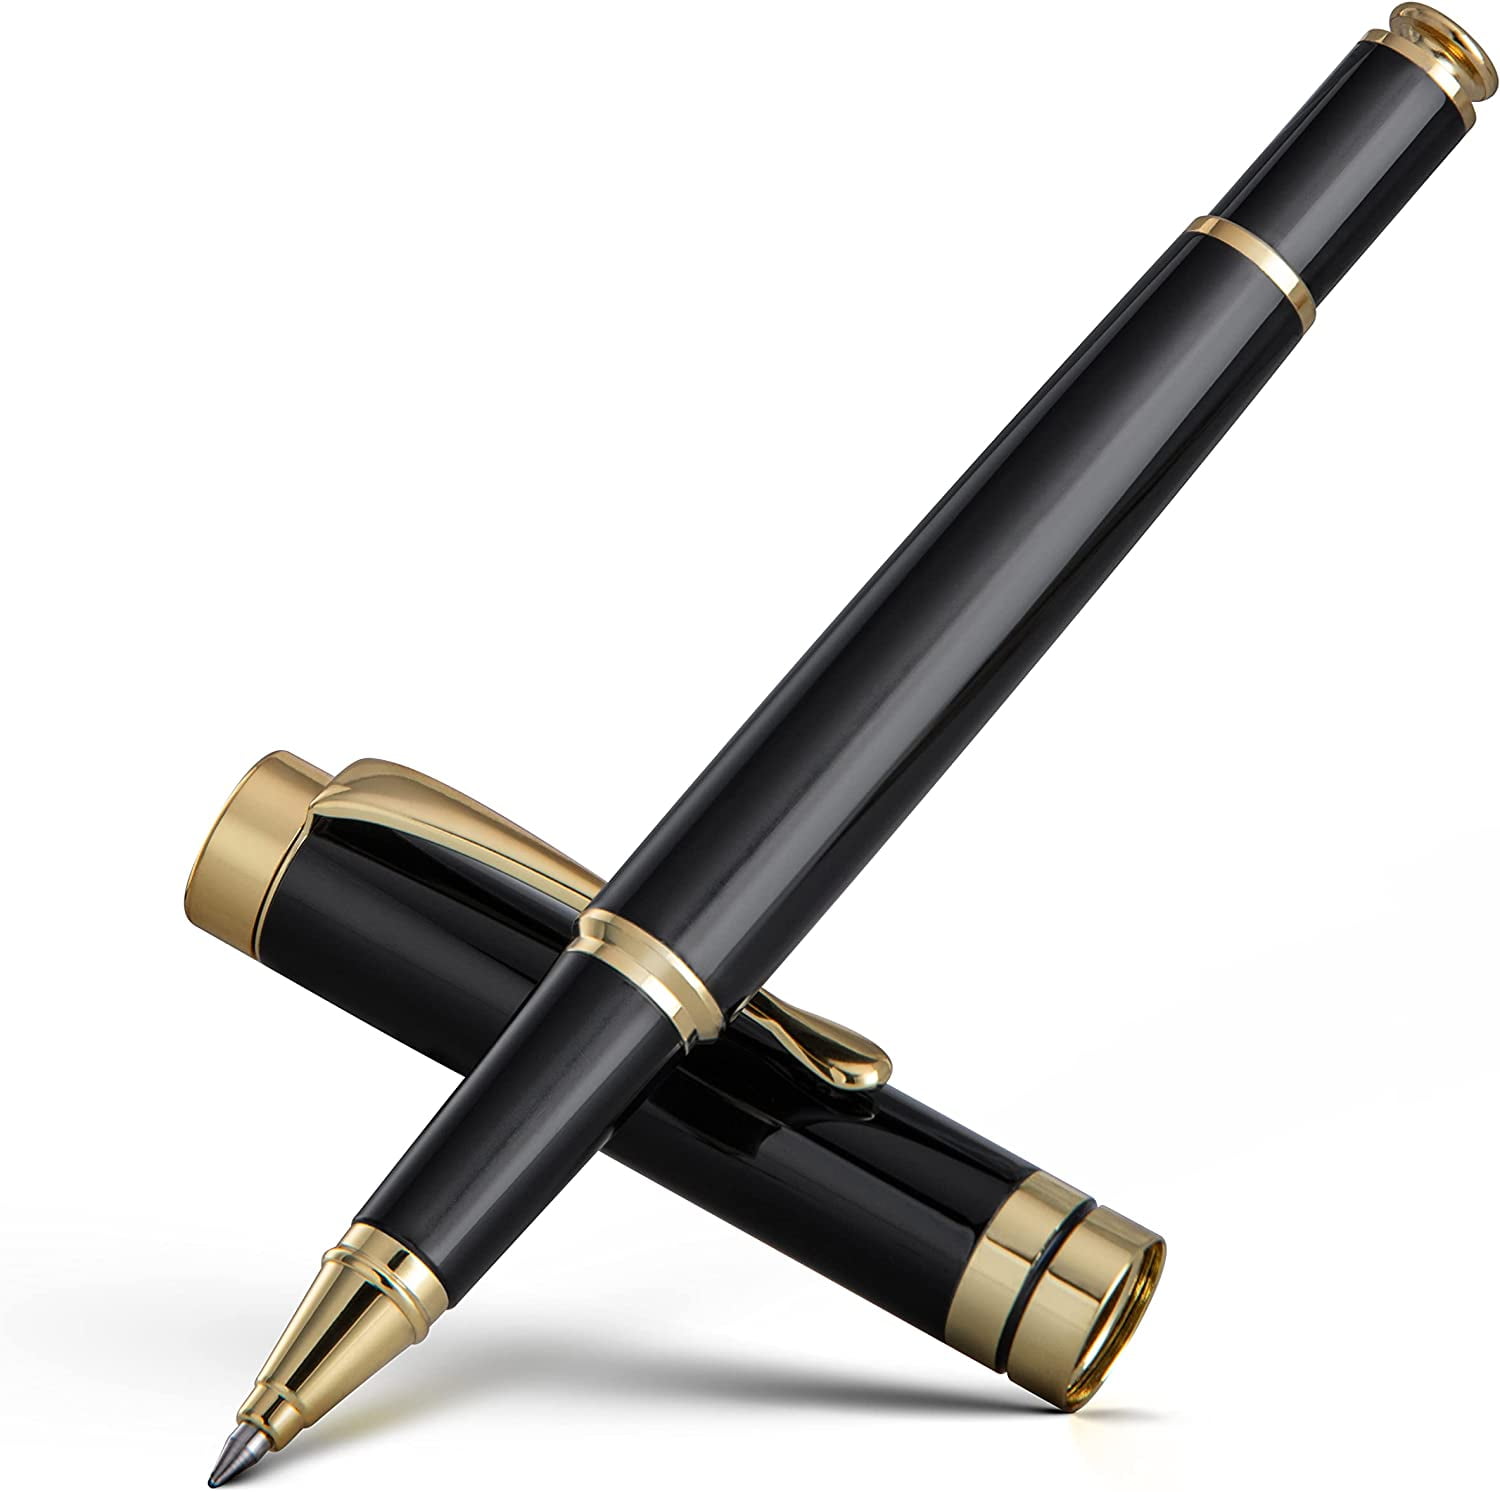 luxury ballpoint pen writing set,fancy gift